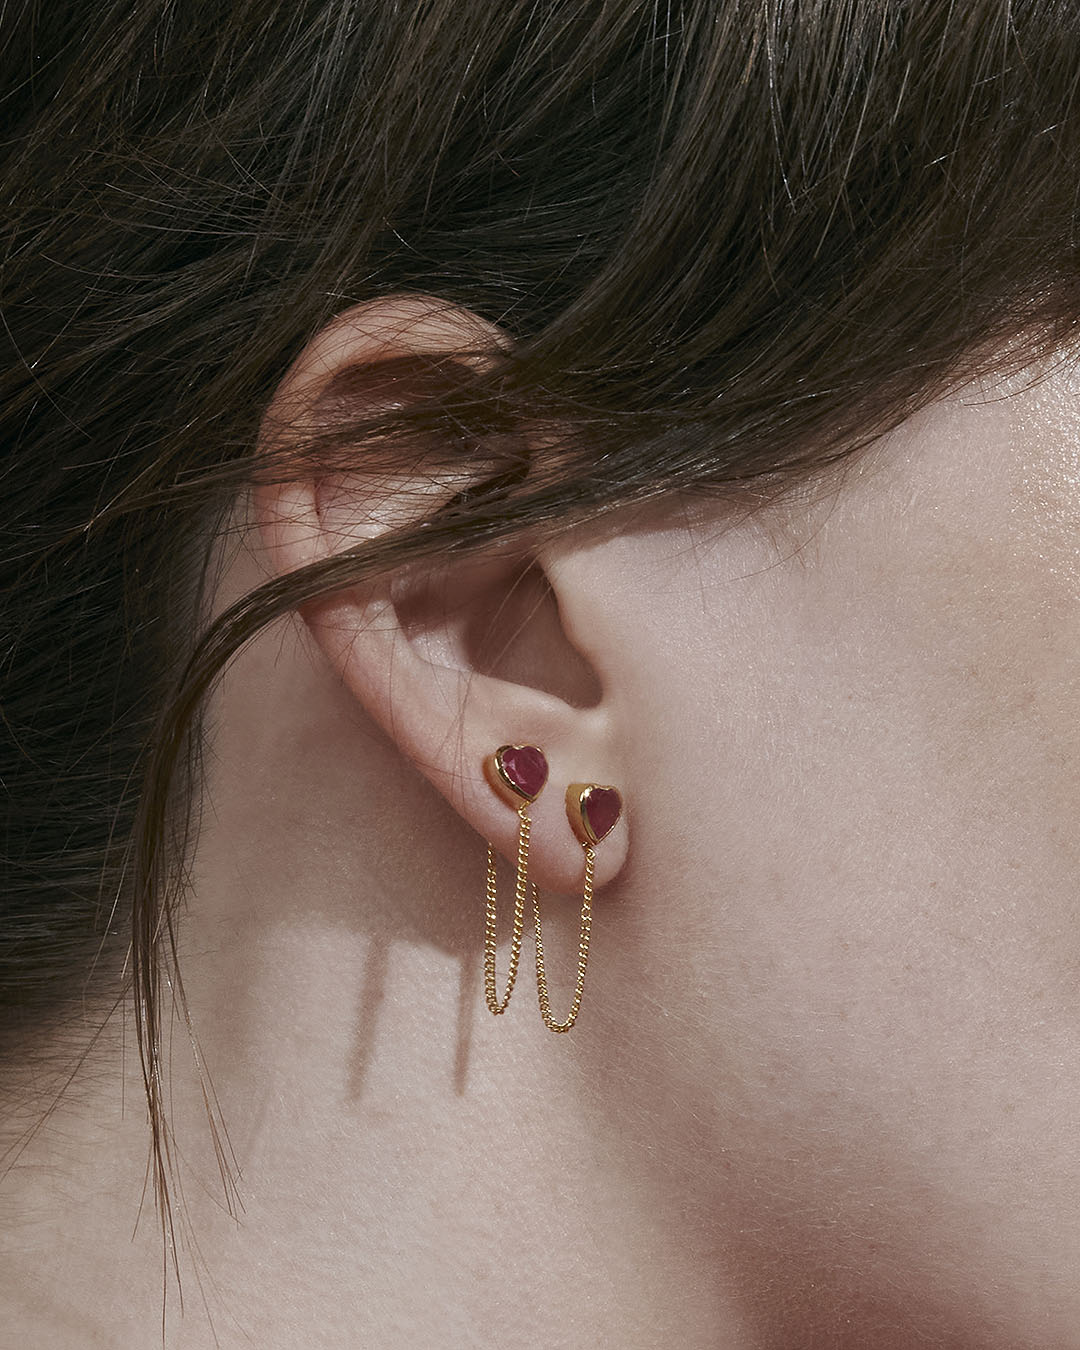 Earrings from Silk&Steel